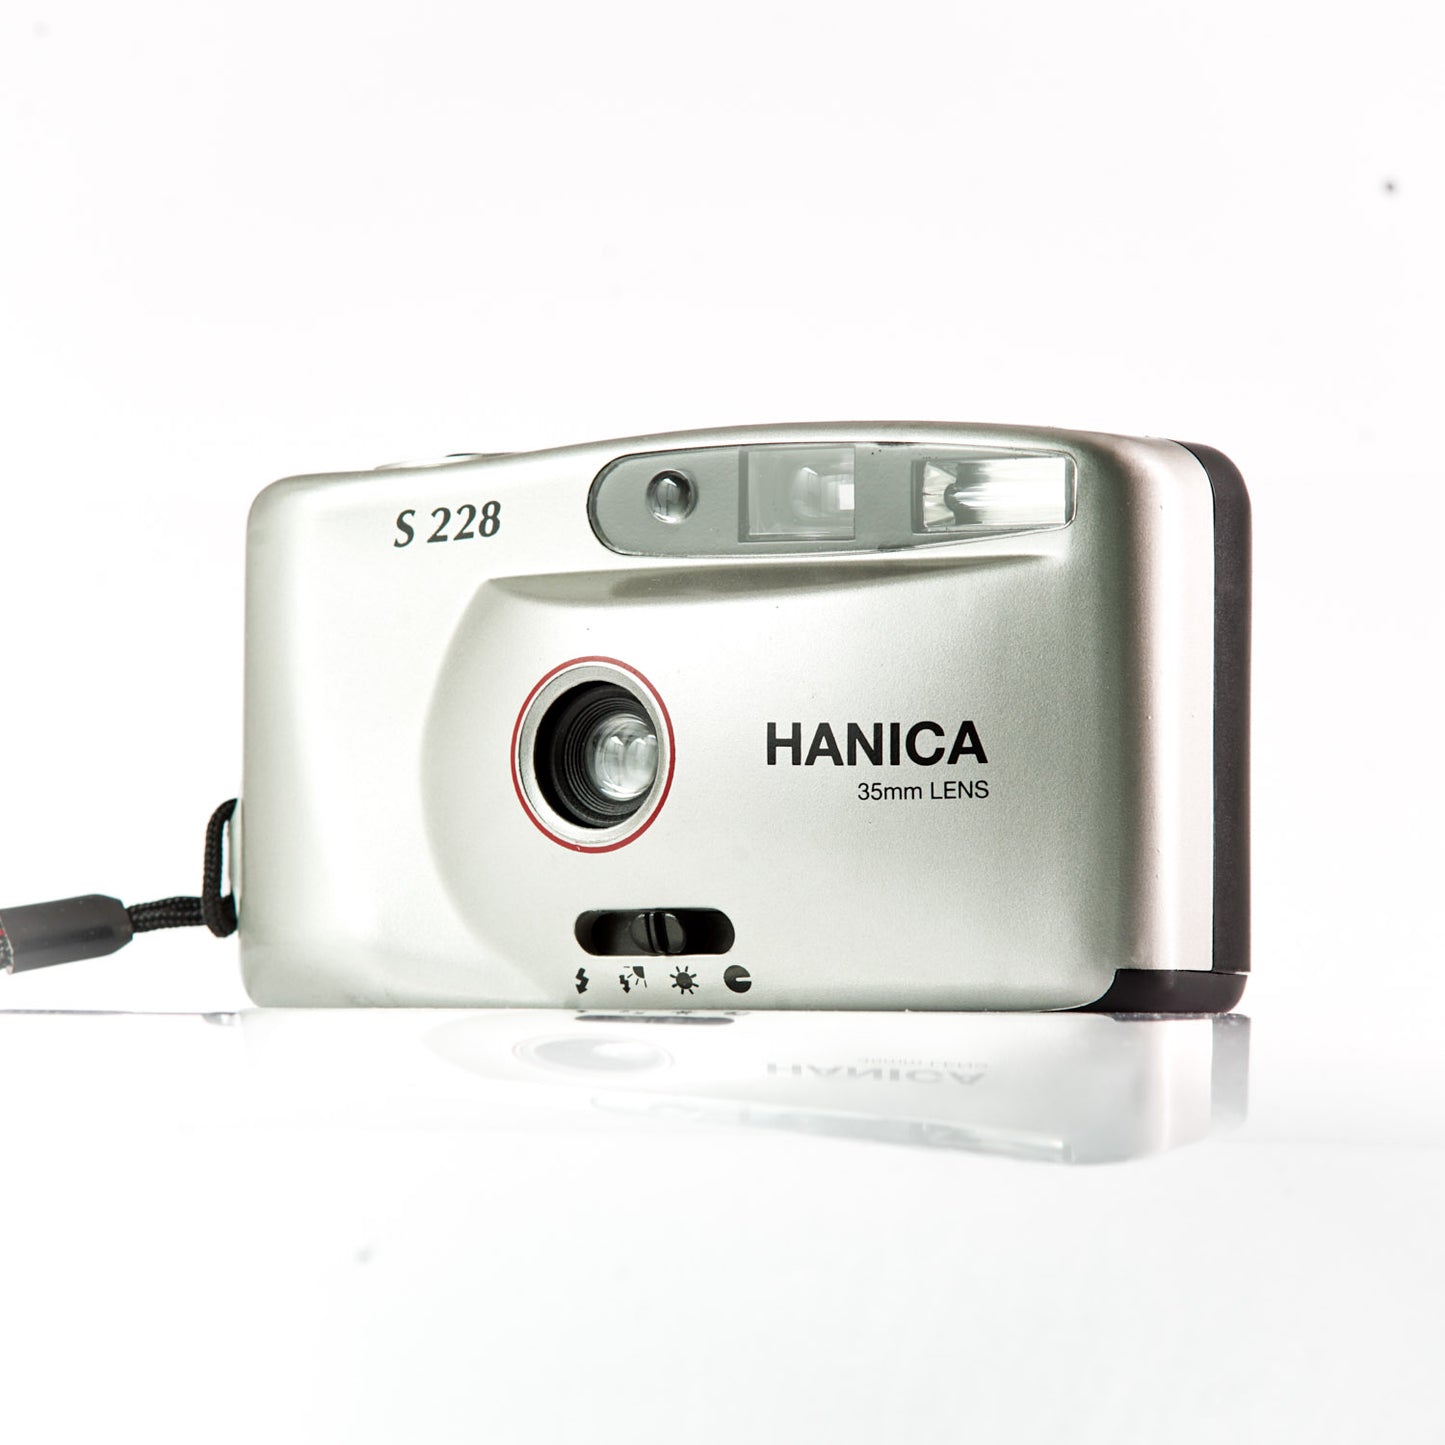 Hanica S228